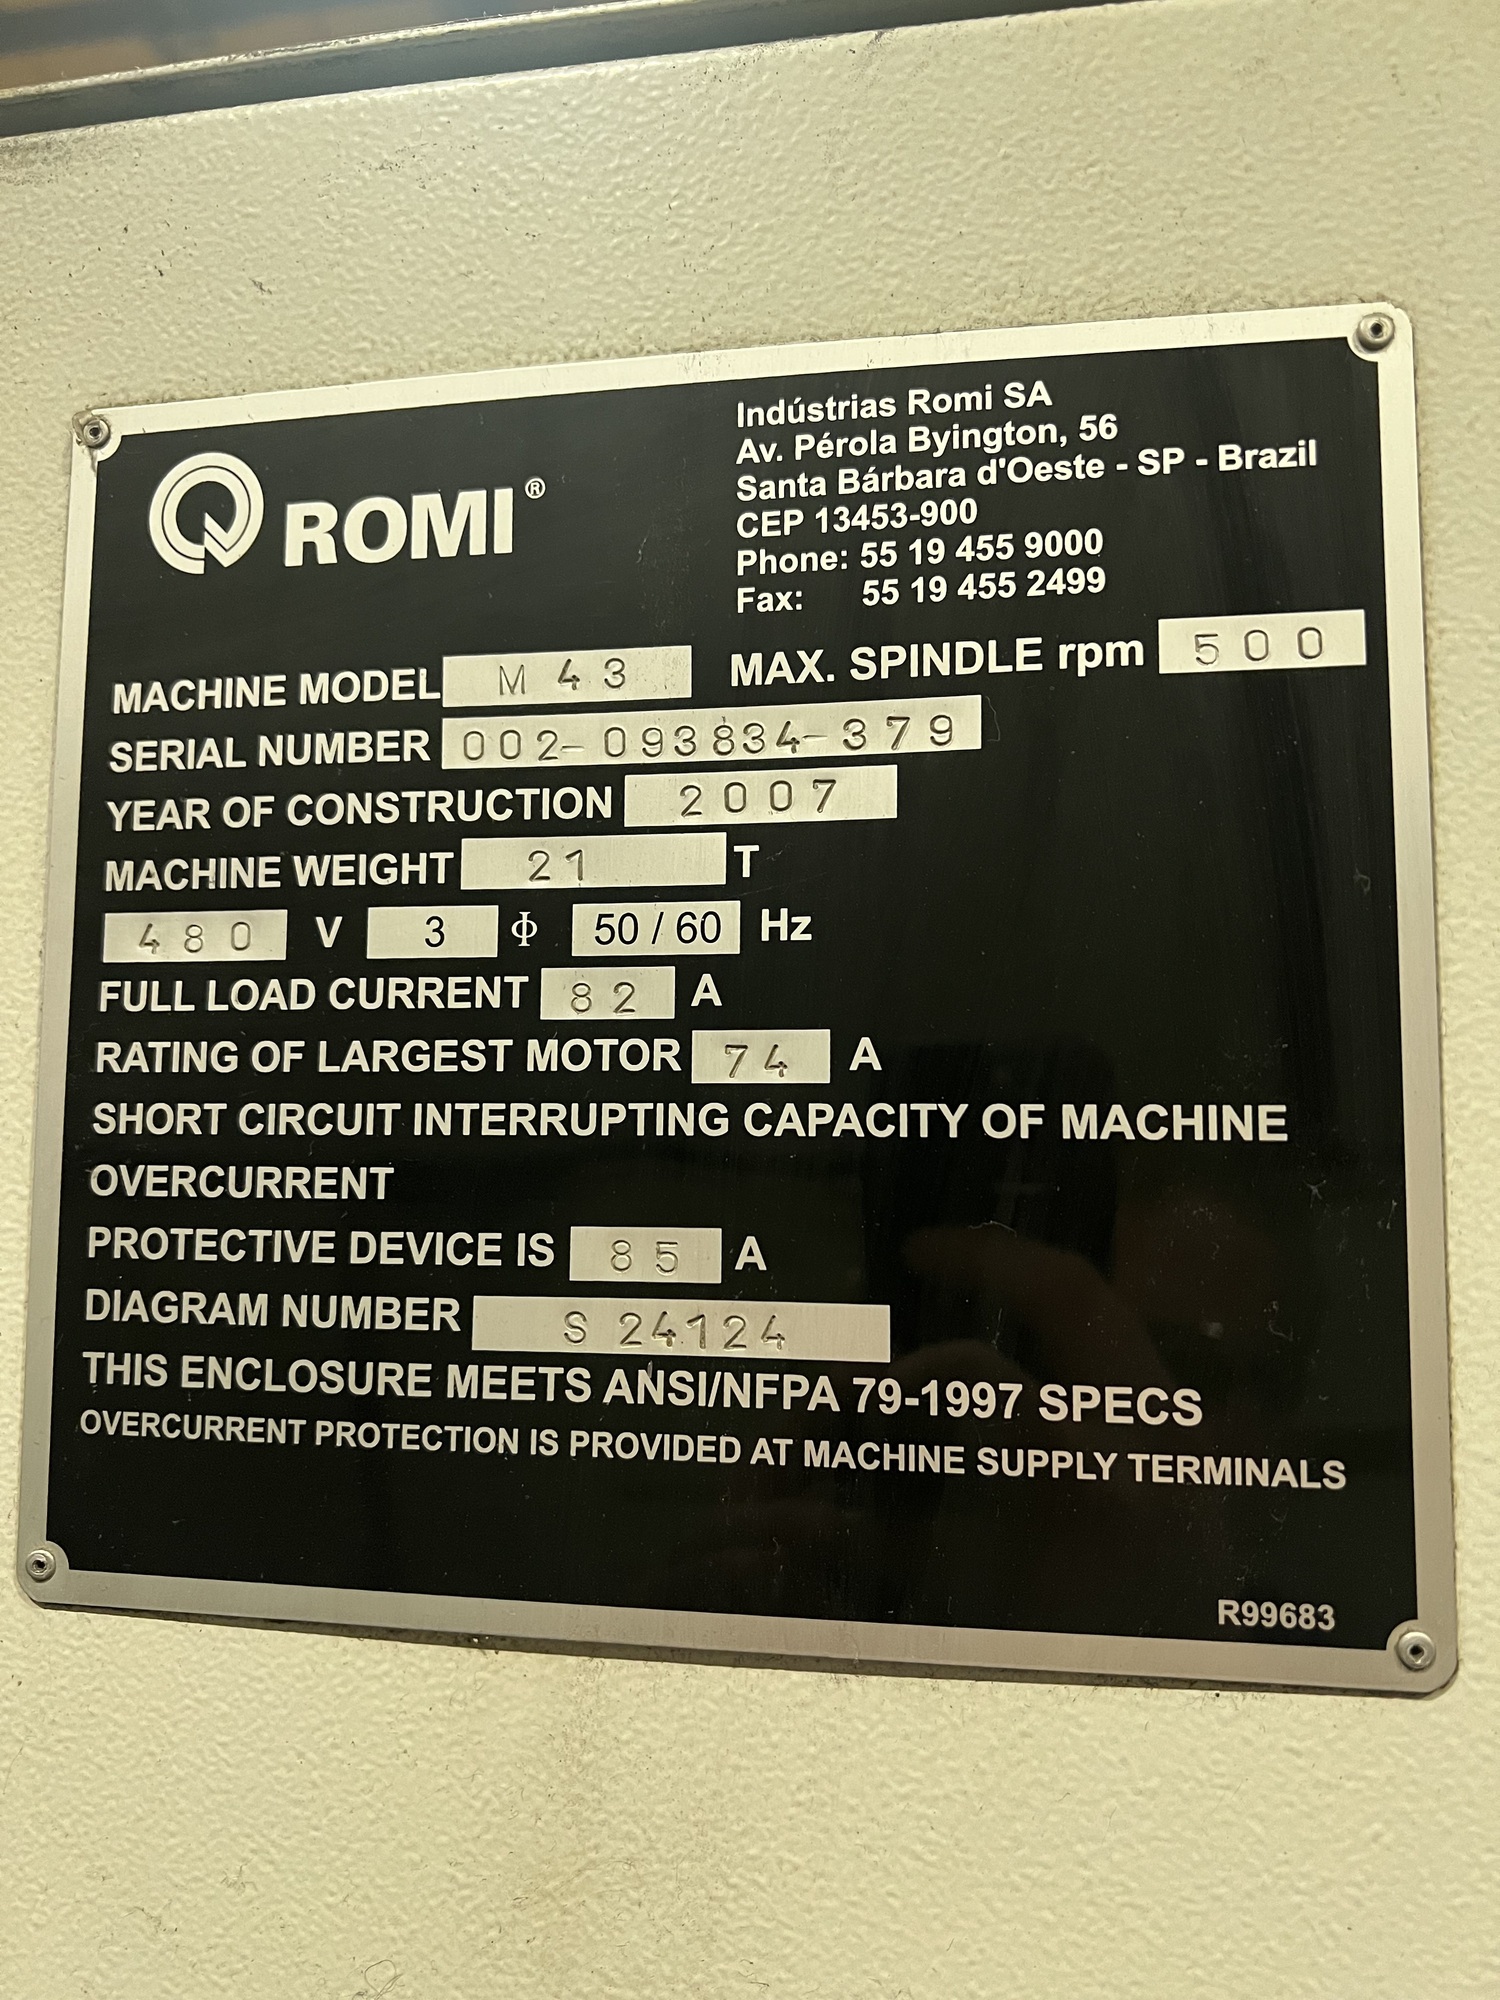 2007 ROMI M43 Geared Head Lathe | Machine Tool Emporium